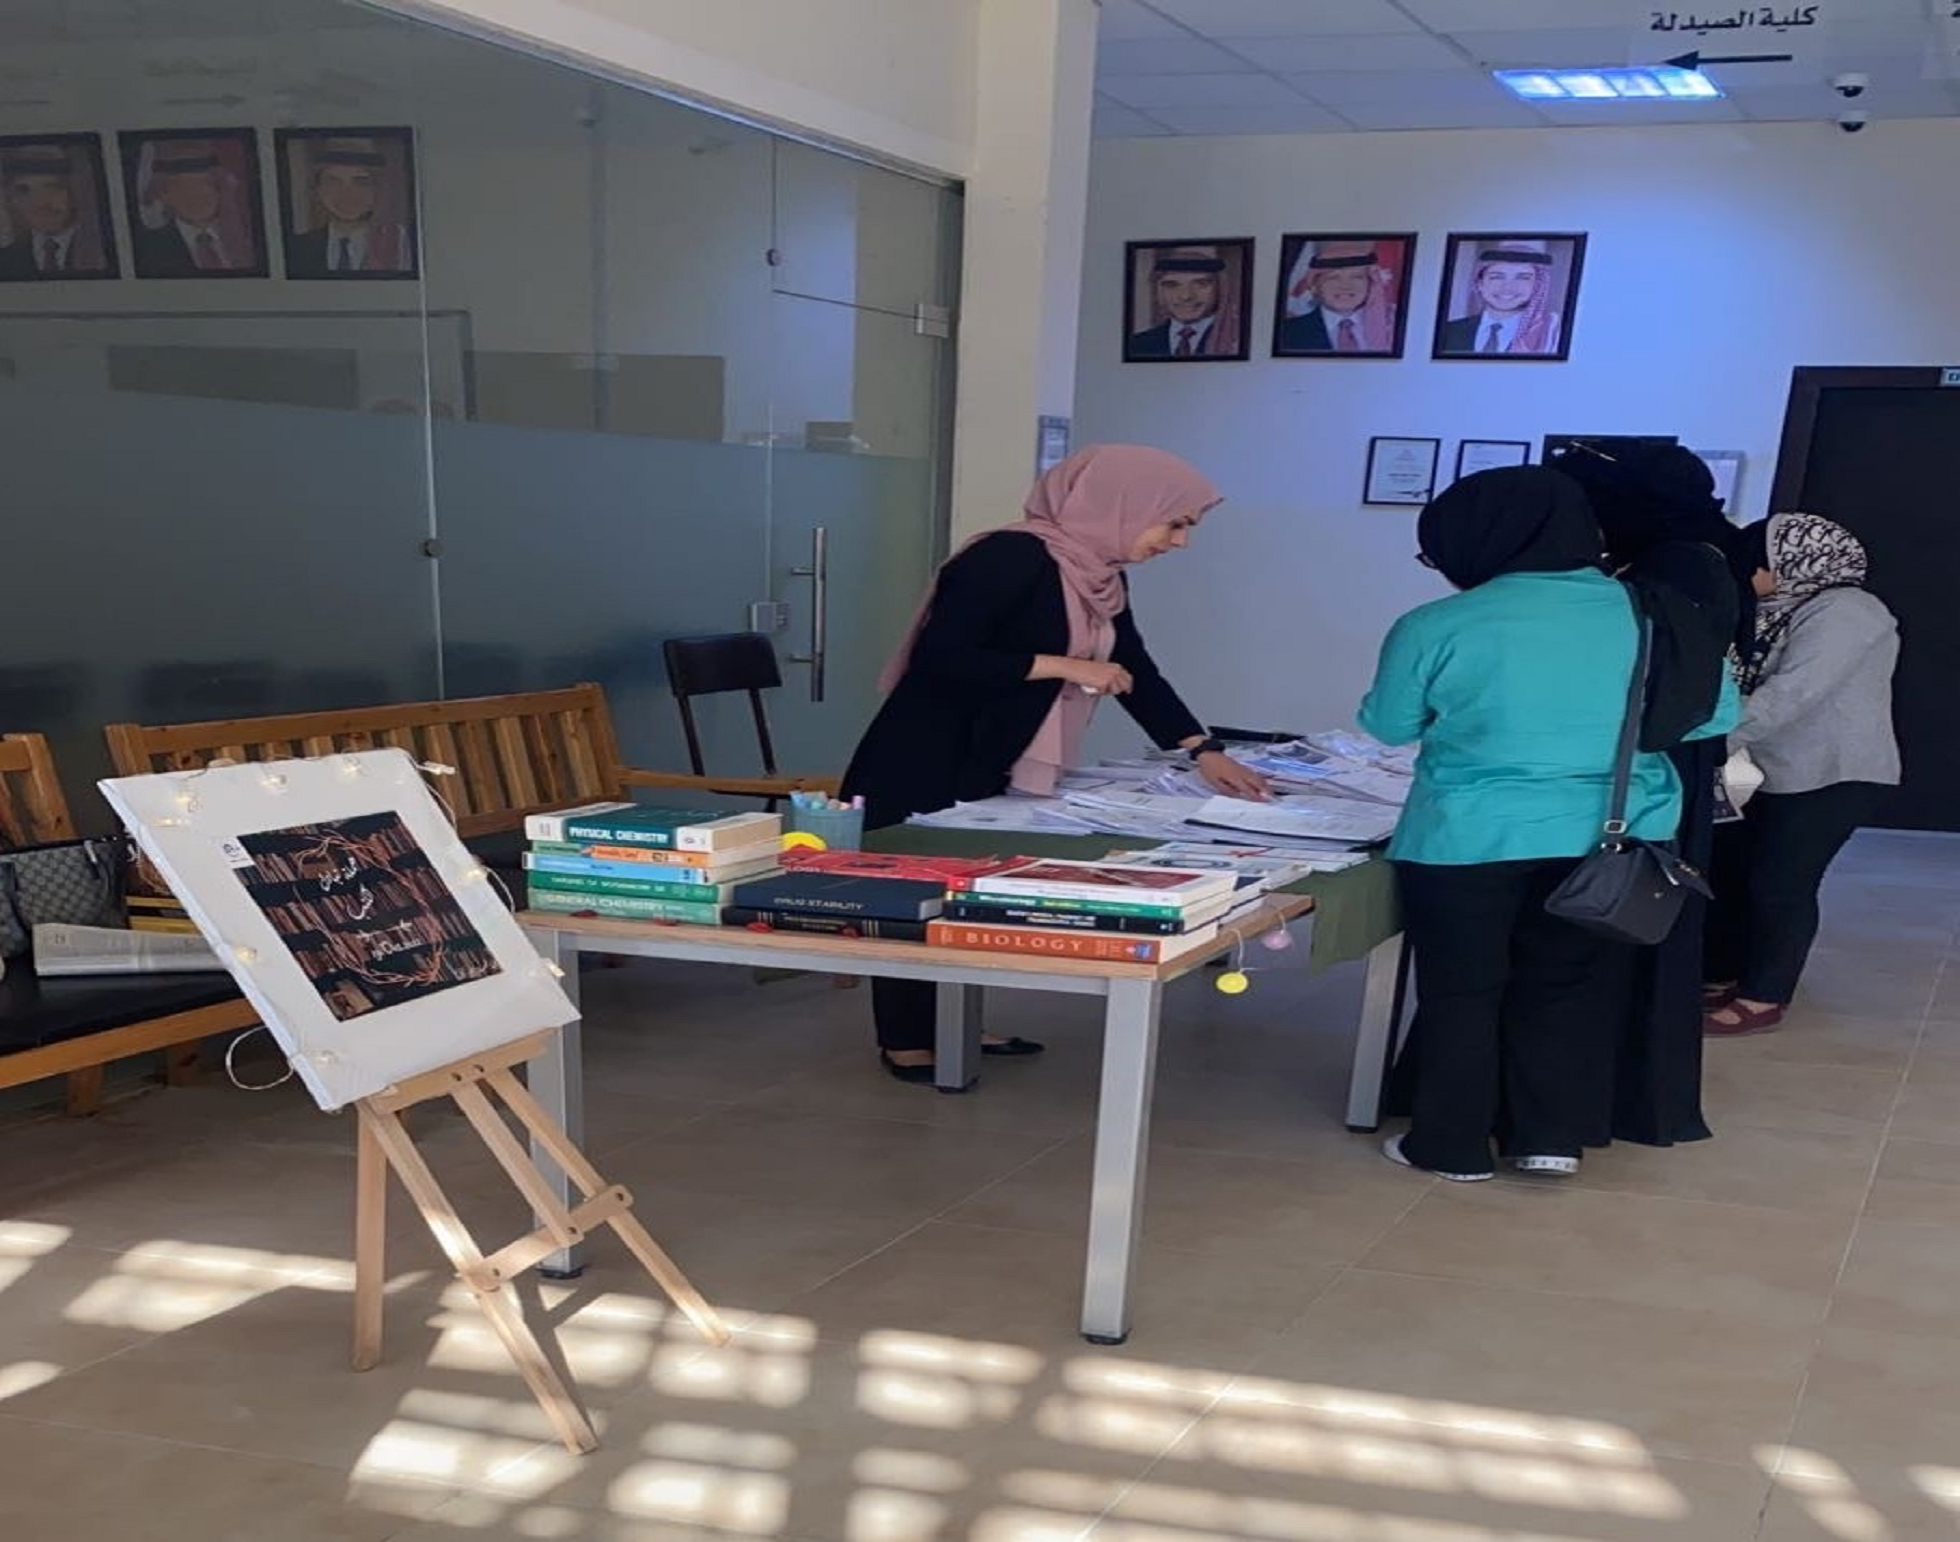 مبادرة " تبادل الكتب العلمية " لطلبة كلية الصيدلة في جامعة عمان العربية2